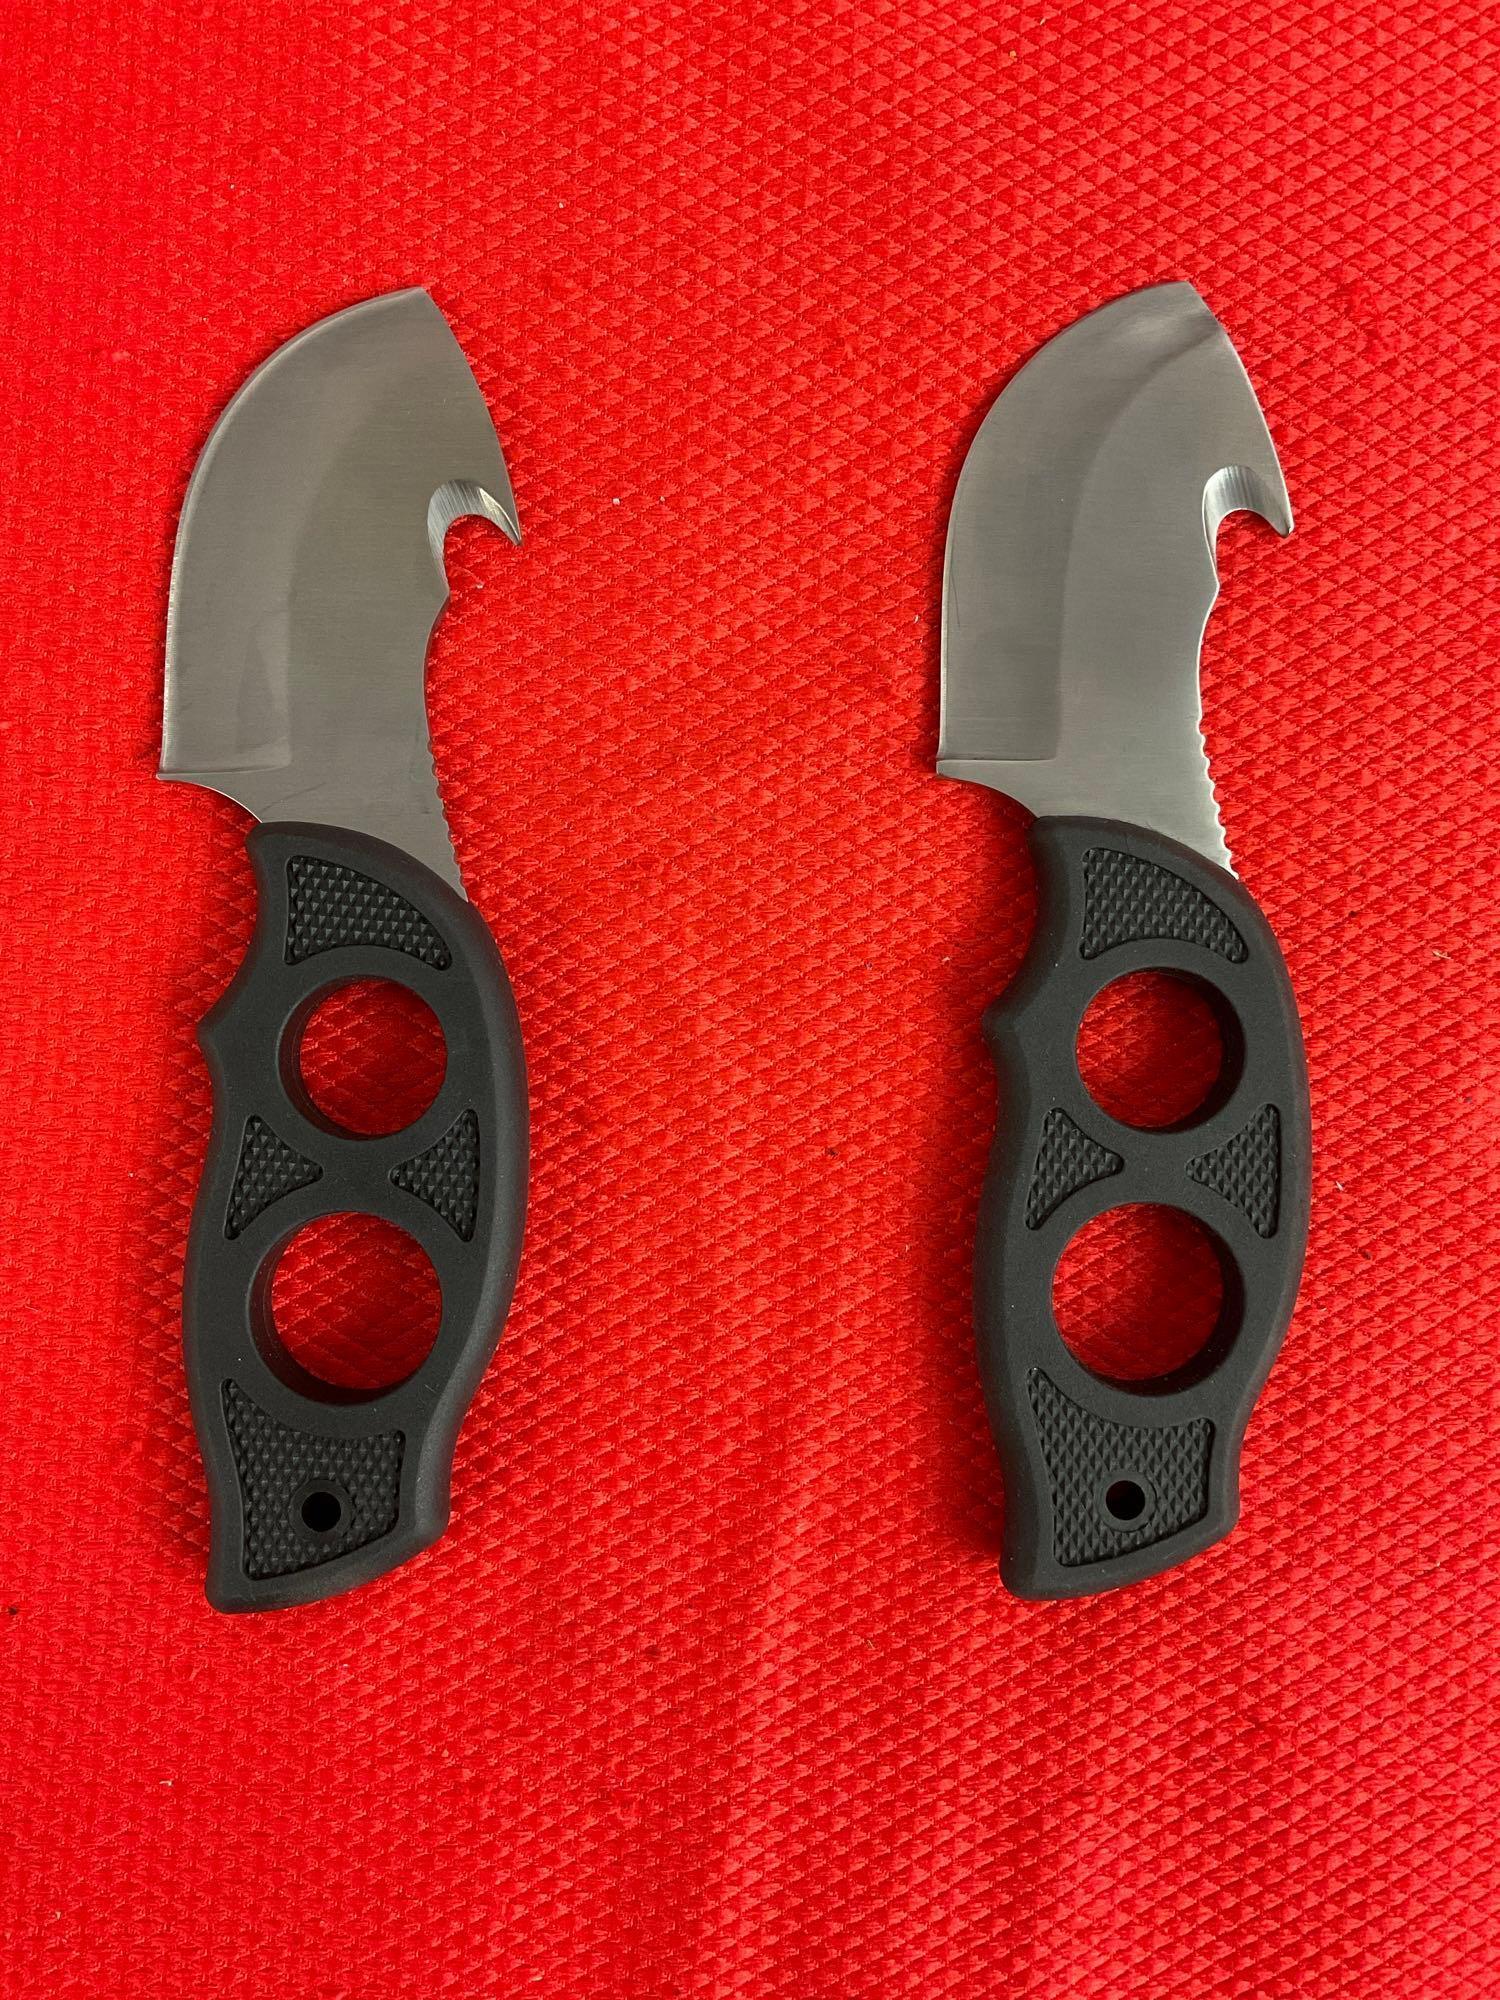 2 pcs Rite Edge 3" Fingergrip Guthook Skinner Knives Model 211184 w/ Nylon Sheathes. NIB. See pics.